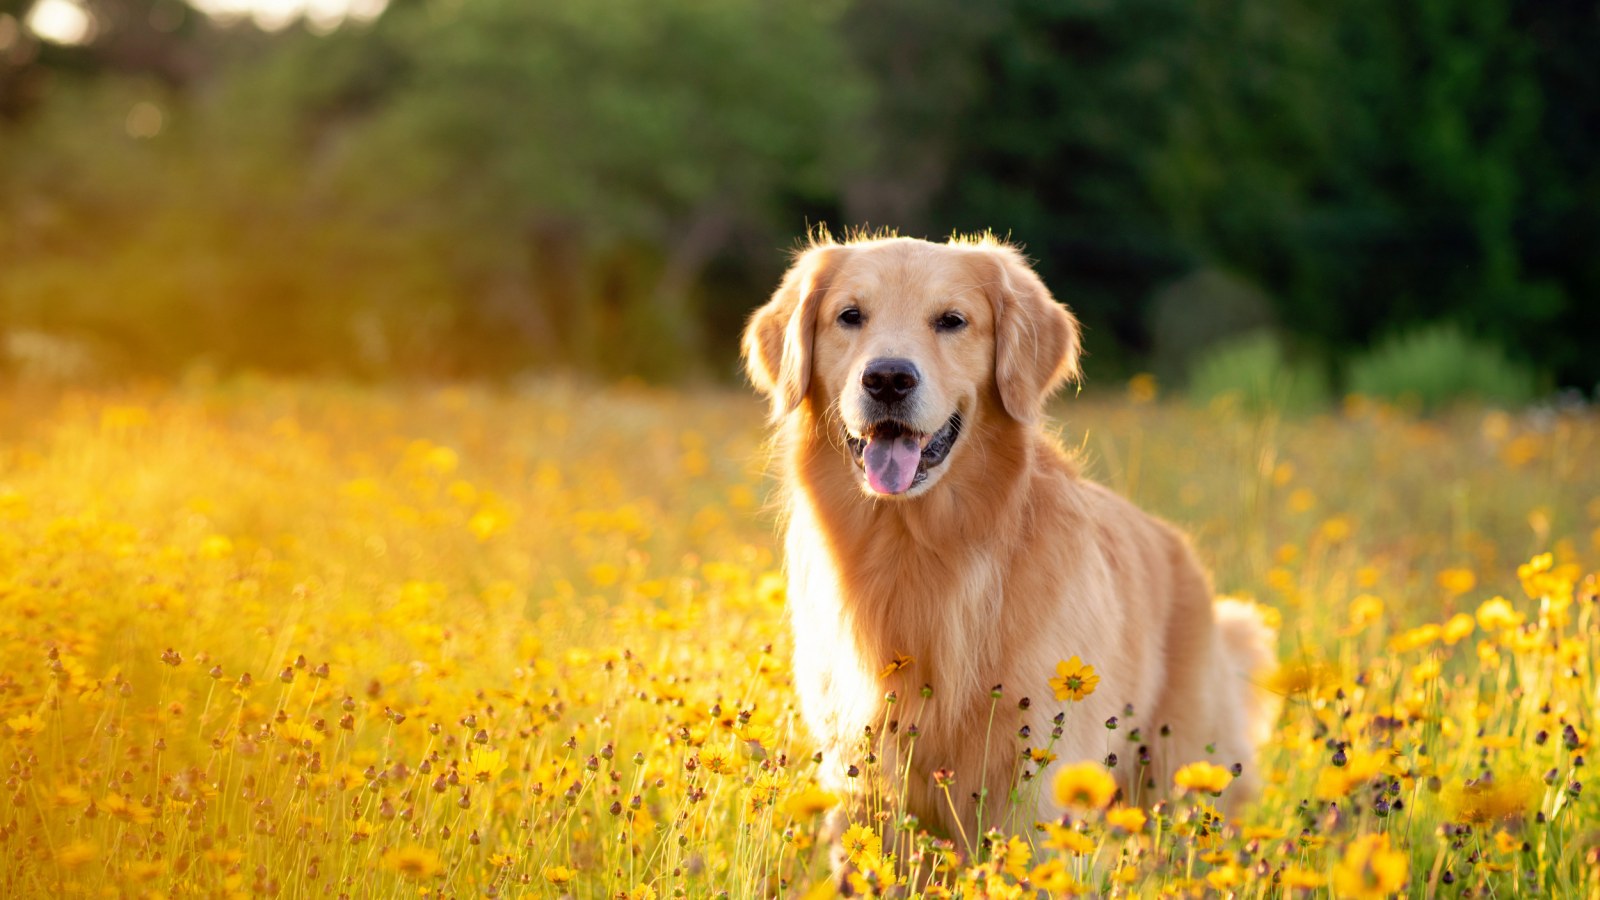 Thưởng thức bức ảnh chó Golden lung linh trong ánh nắng mặt trời khiến bạn muốn ôm chú chó và choàng trên đầu những chiếc lông vàng óng ánh.